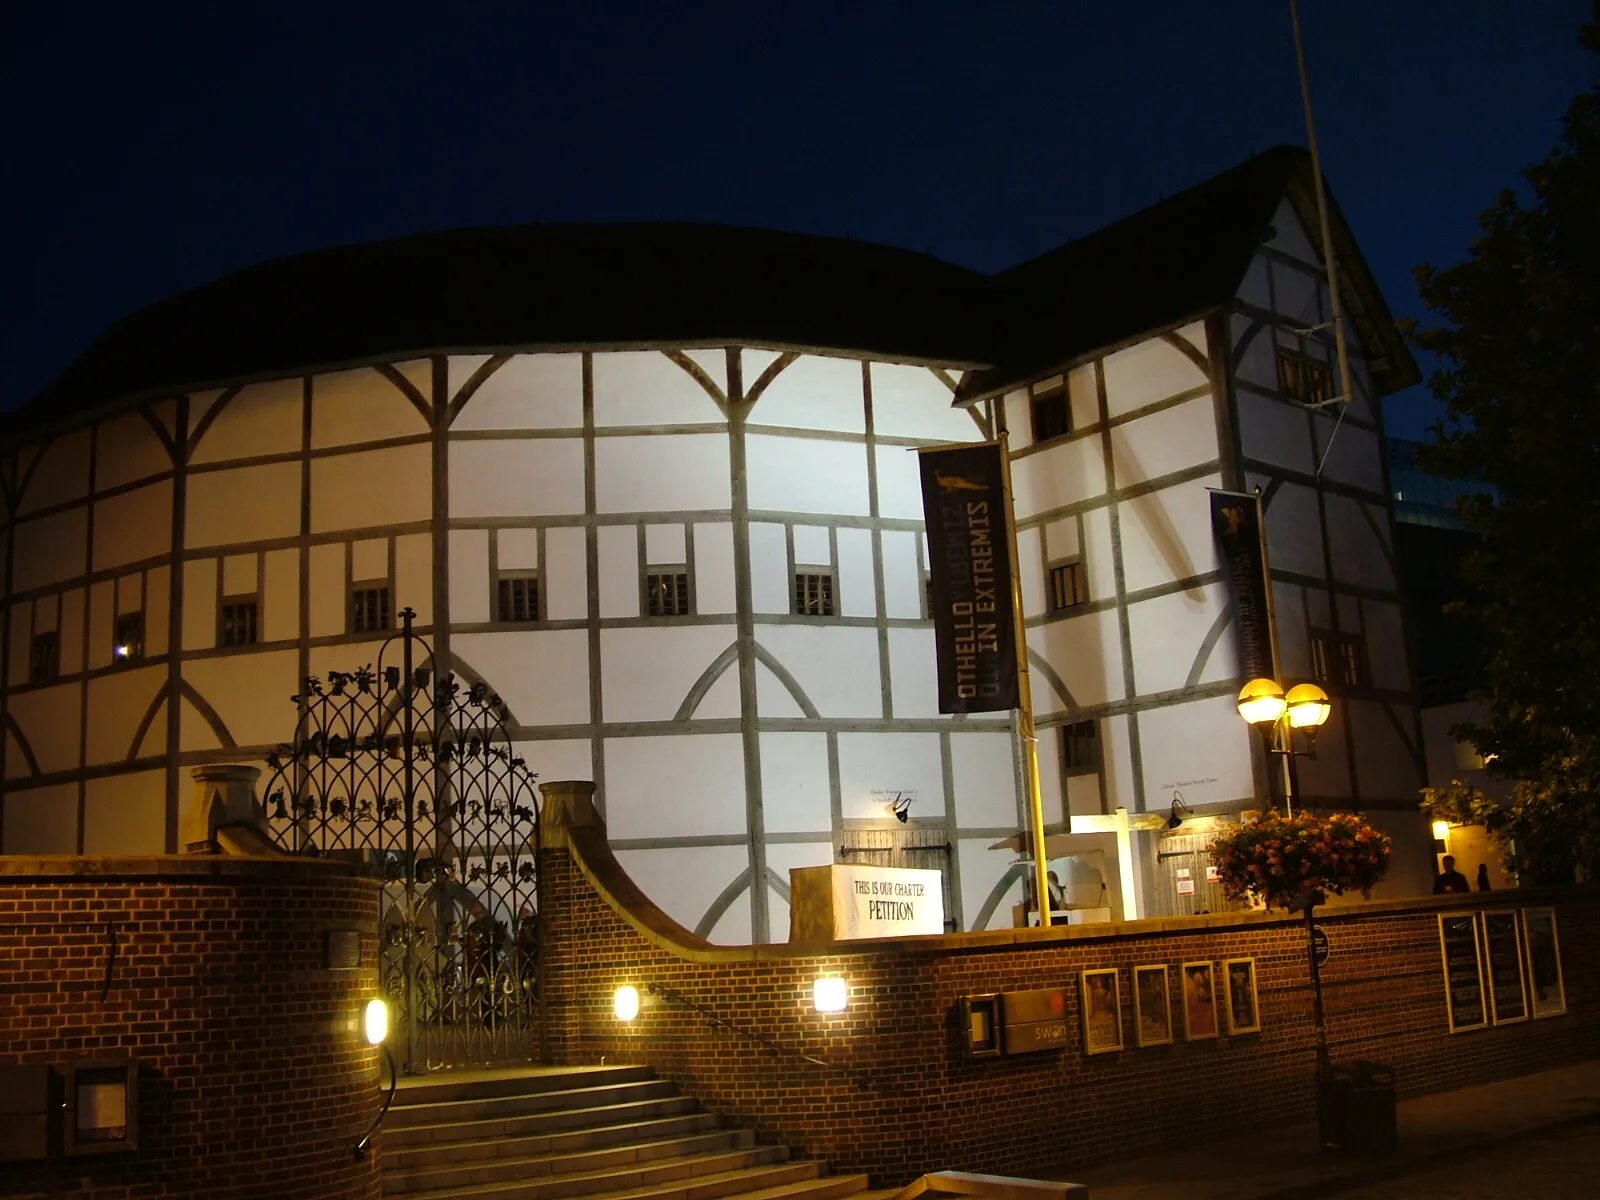 Театр Глобус Шекспира 1599. Глобус Шекспира Лондон. Шекспировский театр Глобус в Лондоне. Вильям Шекспир театр Глобус.